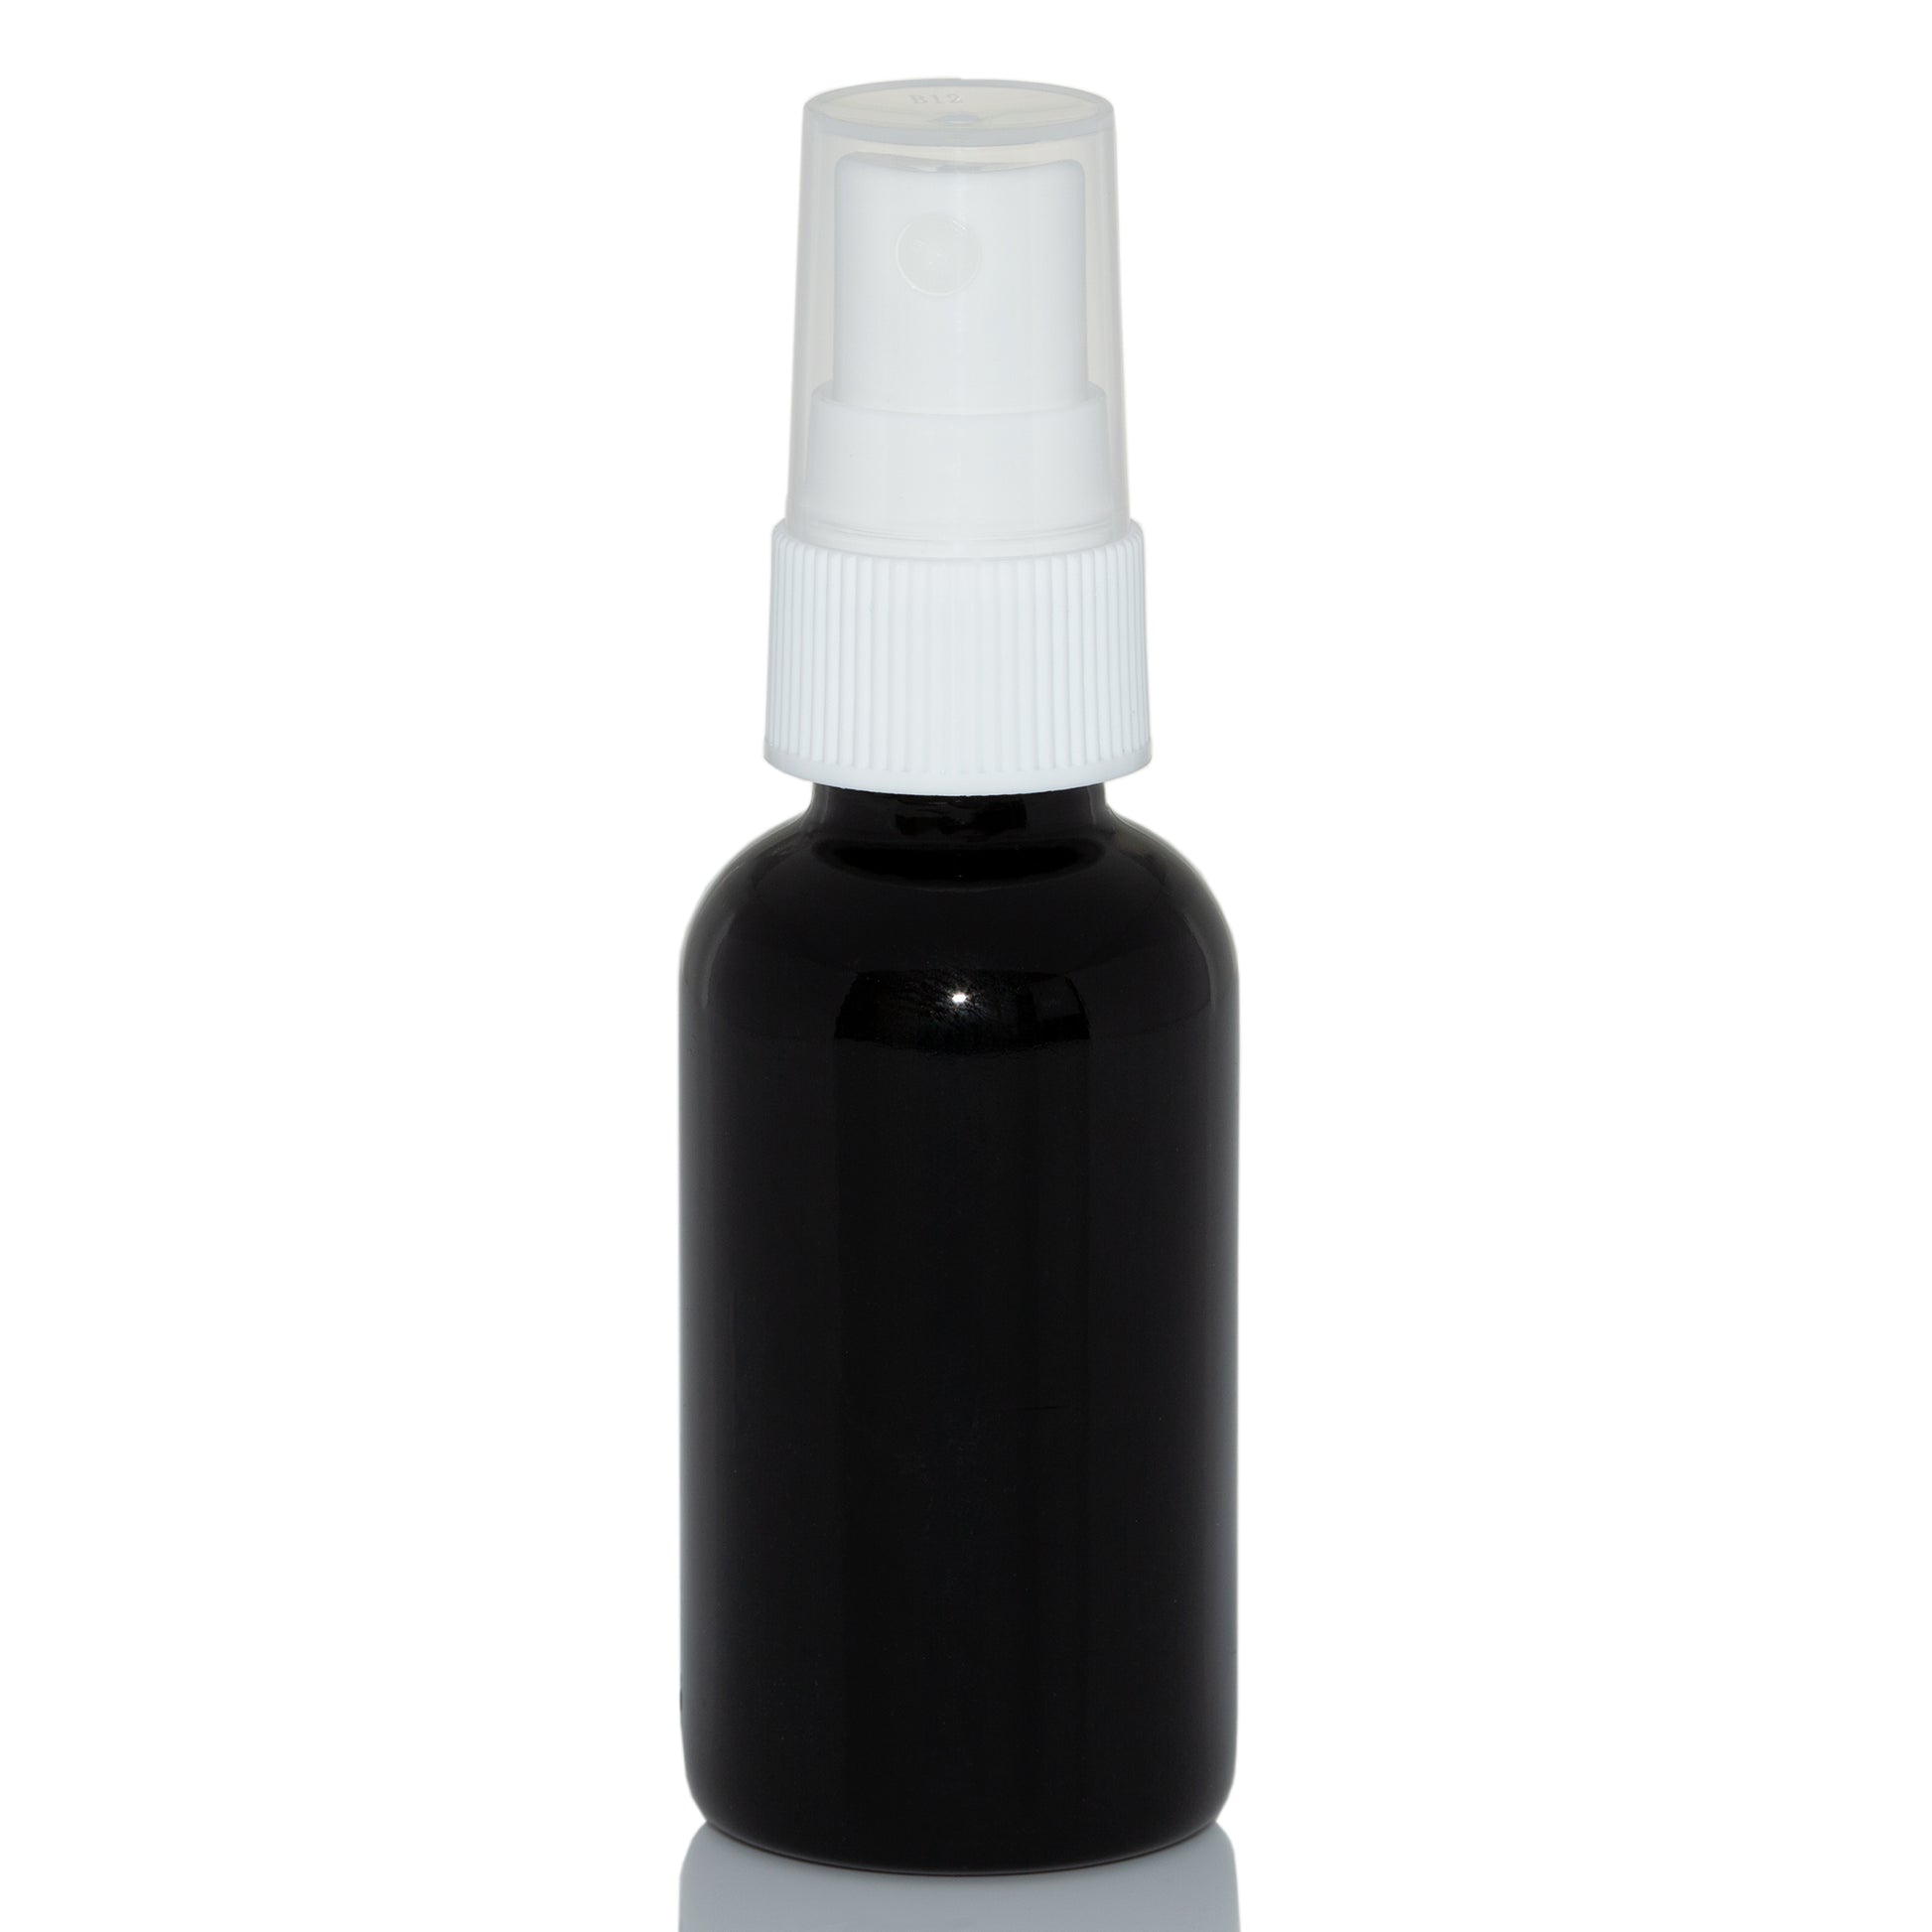 1 oz Black Glass Bottle with 20-400 White Fine Mist Sprayer